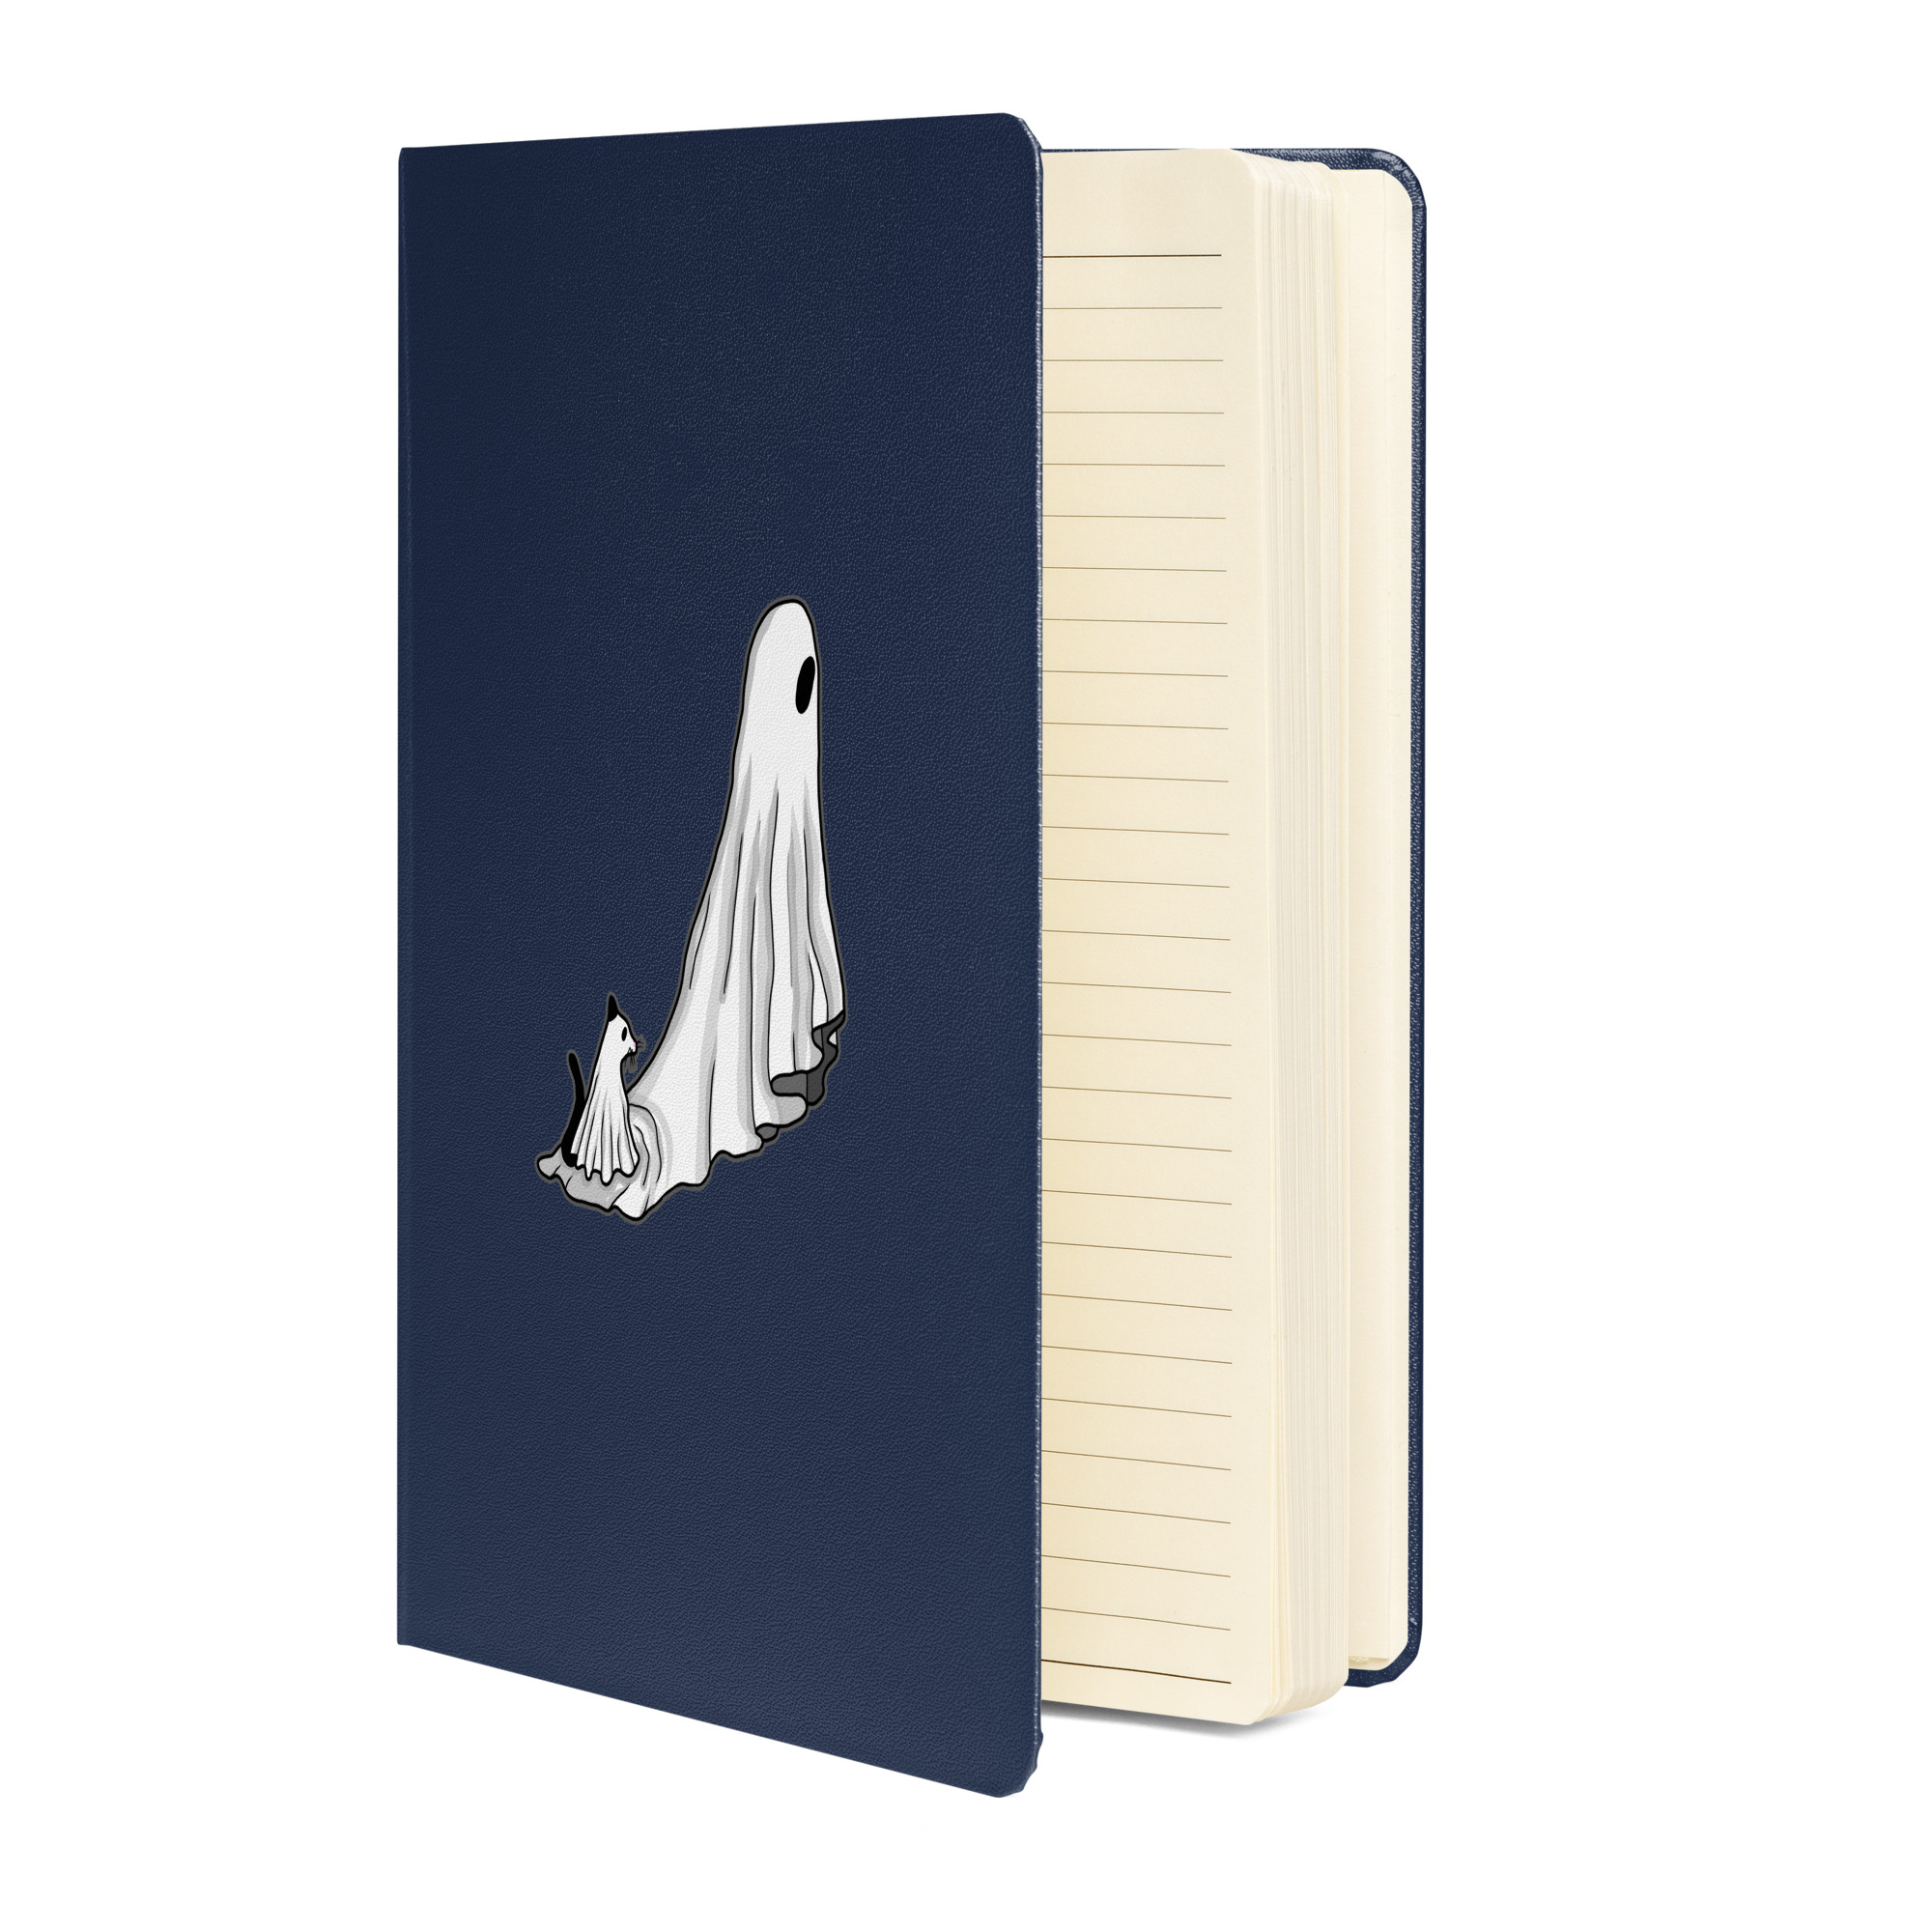 hardcover-bound-notebook-navy-front-6537e8d8bd2d5.jpg